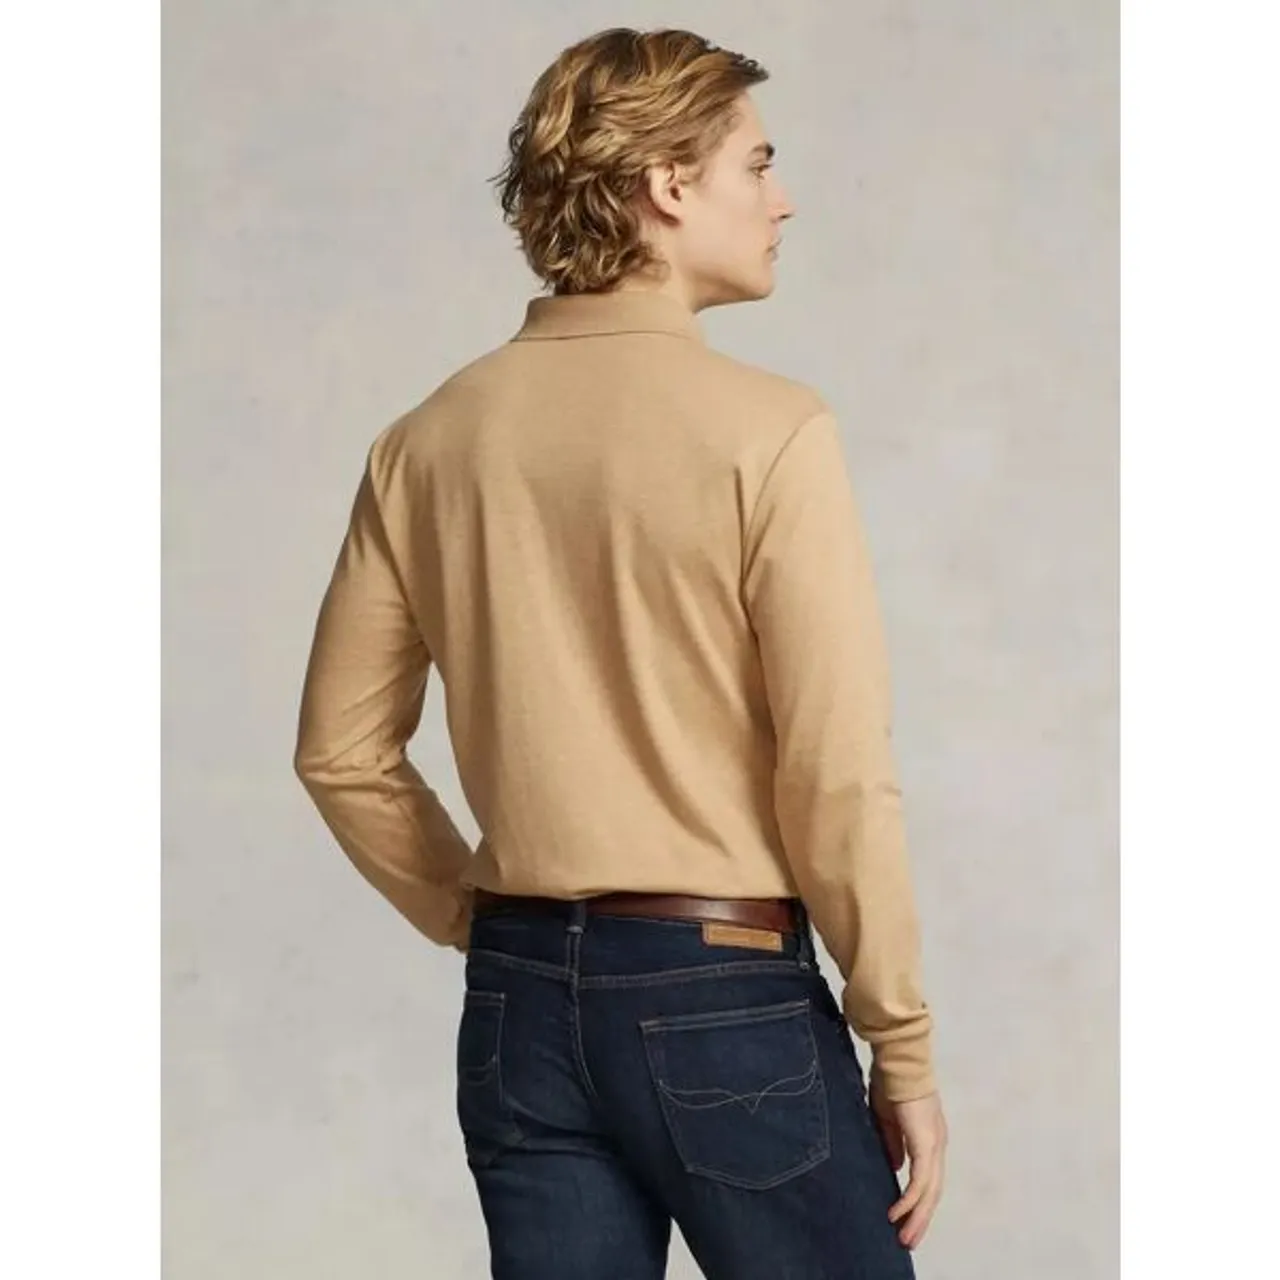 Polo Ralph Lauren Slim Fit Soft Cotton Polo Shirt, Camel - Classic Camel Htr - Male